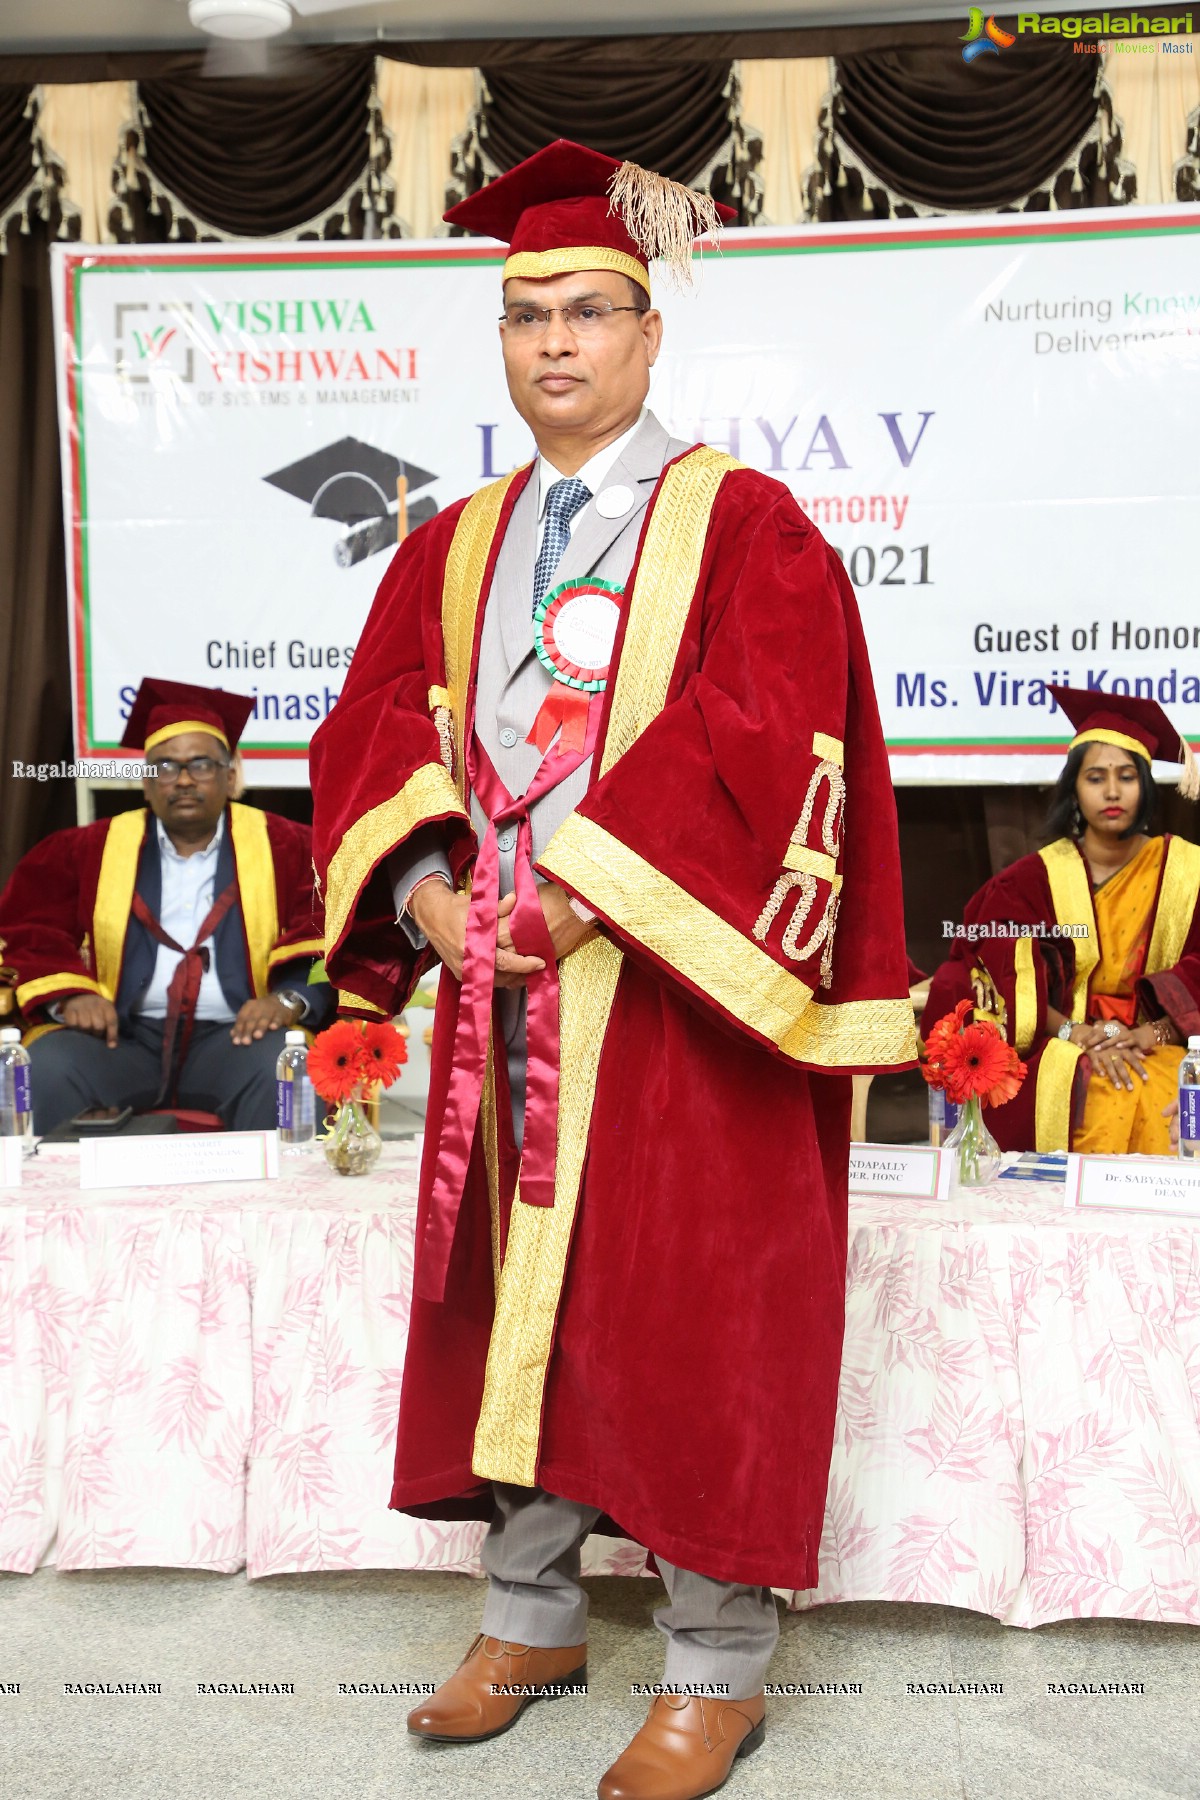 Lakshya - V Convocation Ceremony 2021 at Vishwa Vishwani Institute of Systems and Management (VVISM)